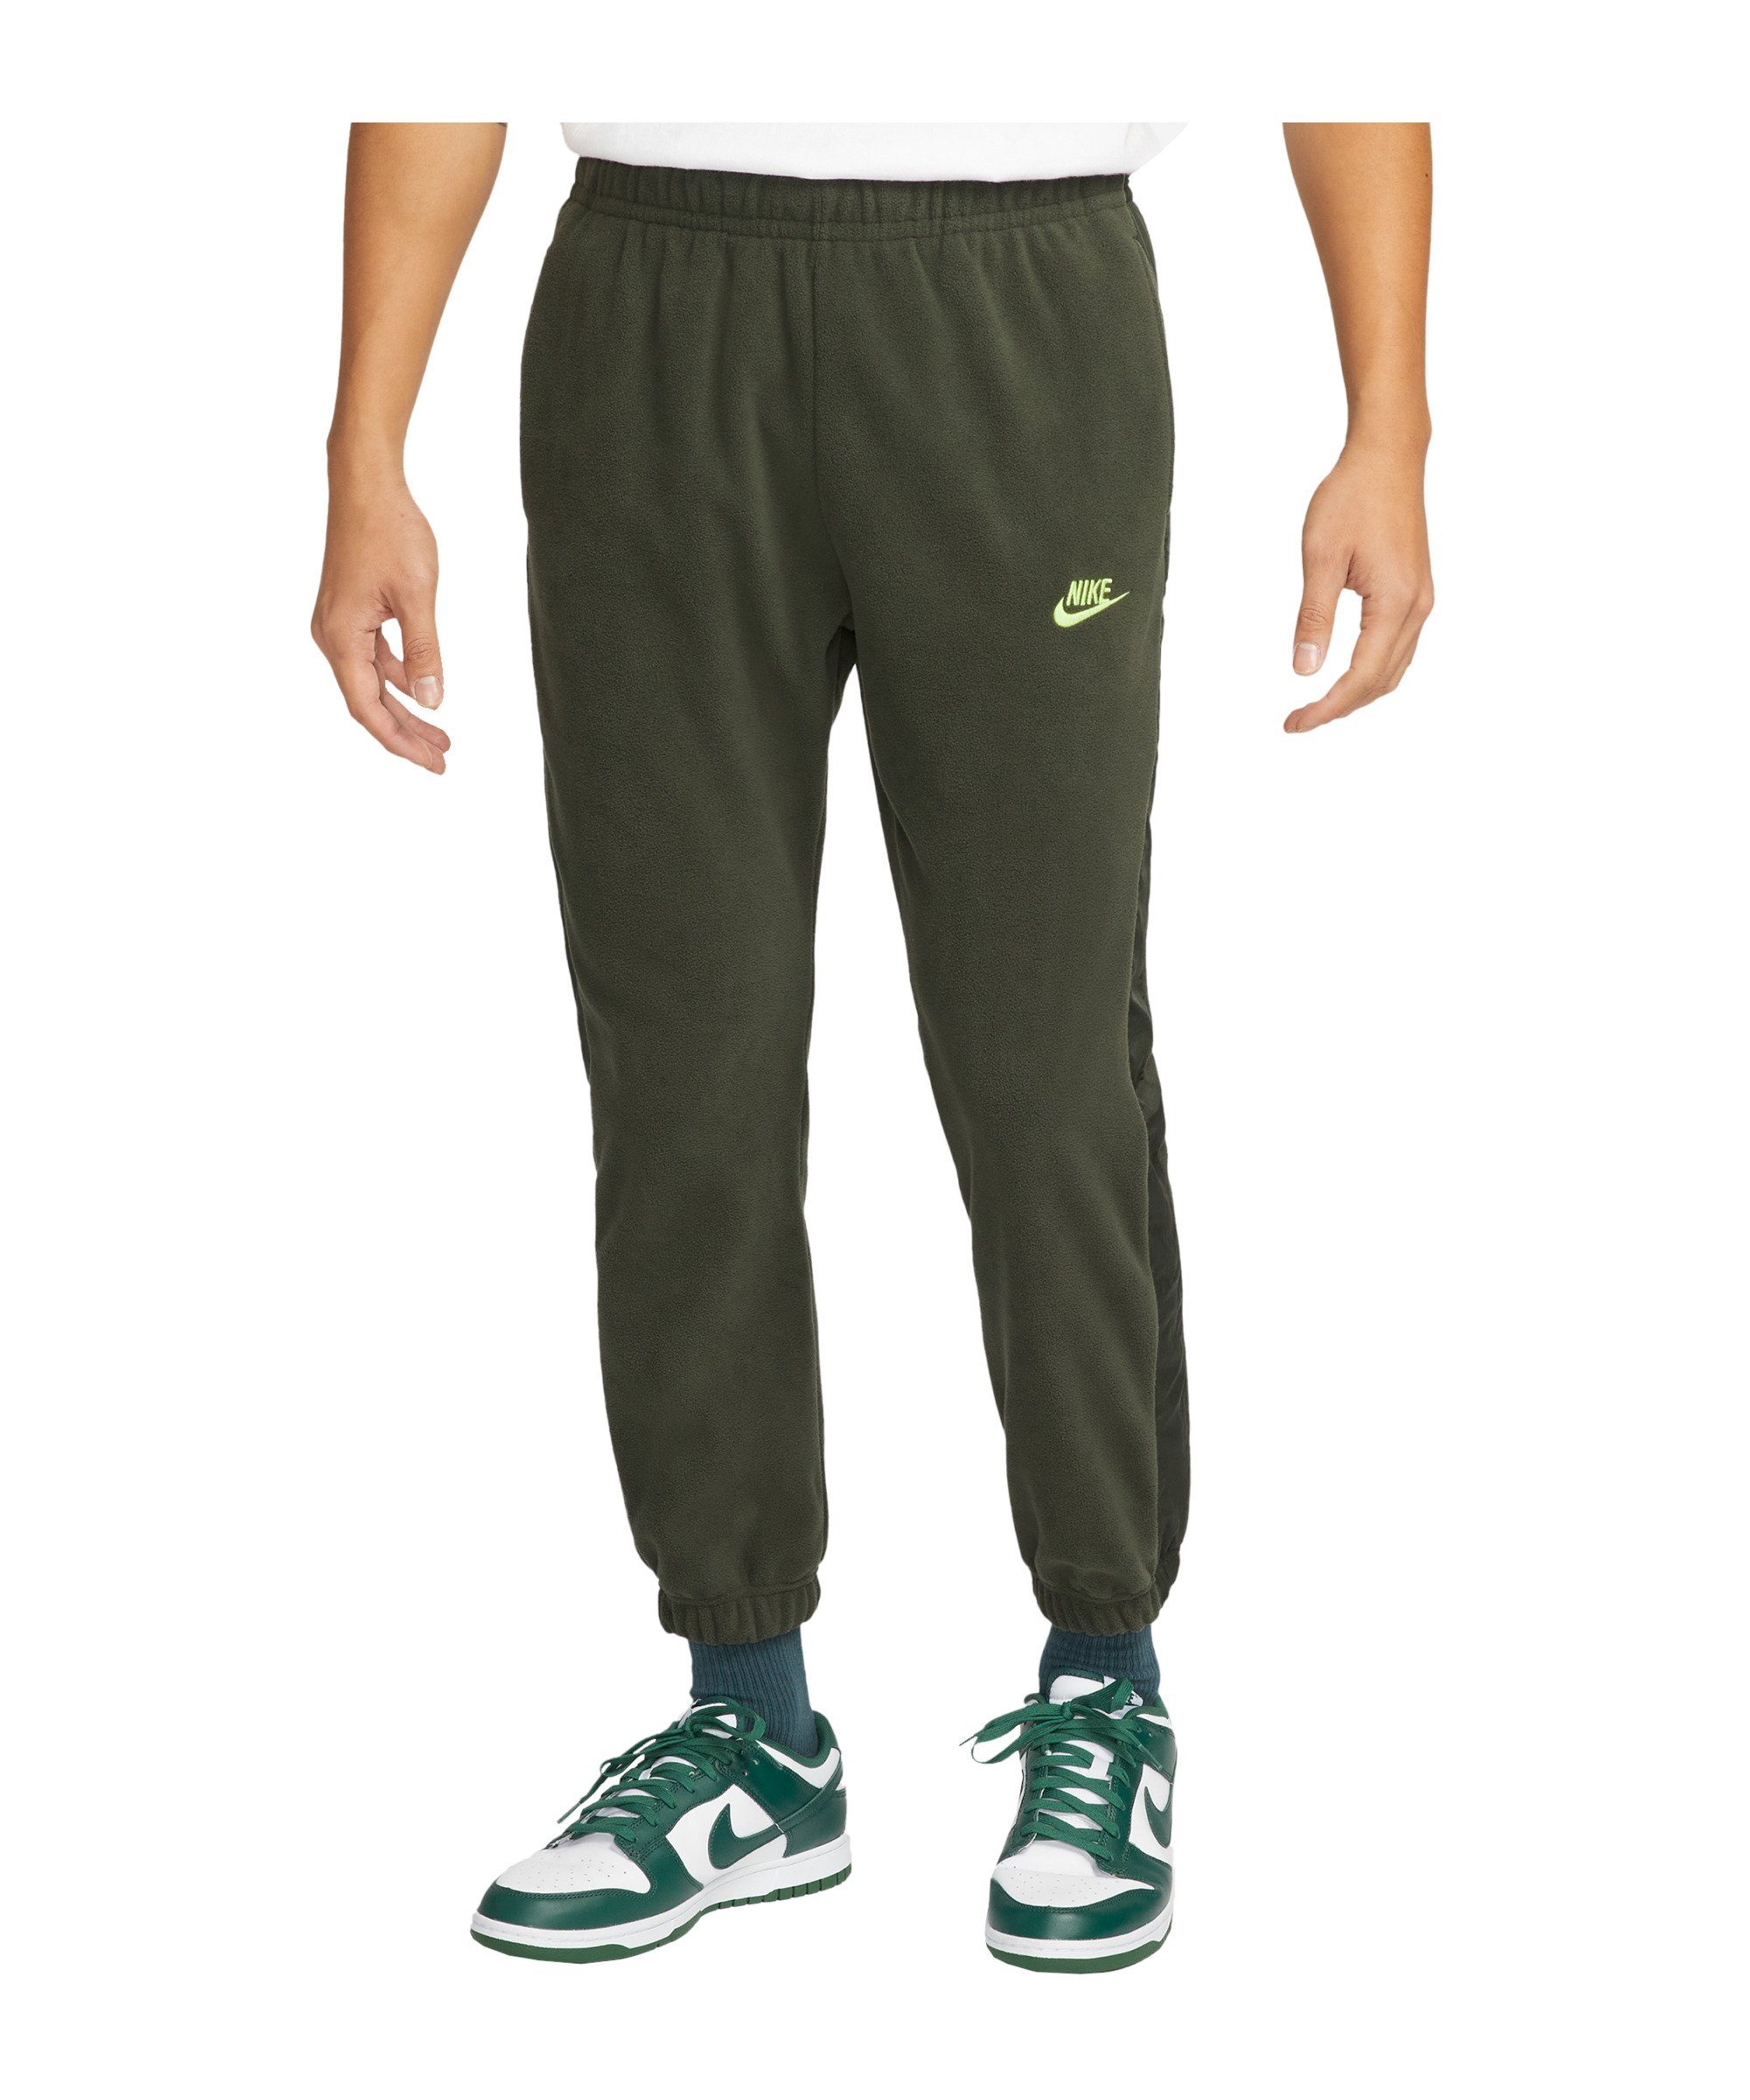 Grüne Nike Jogginghosen für Herren online kaufen | OTTO